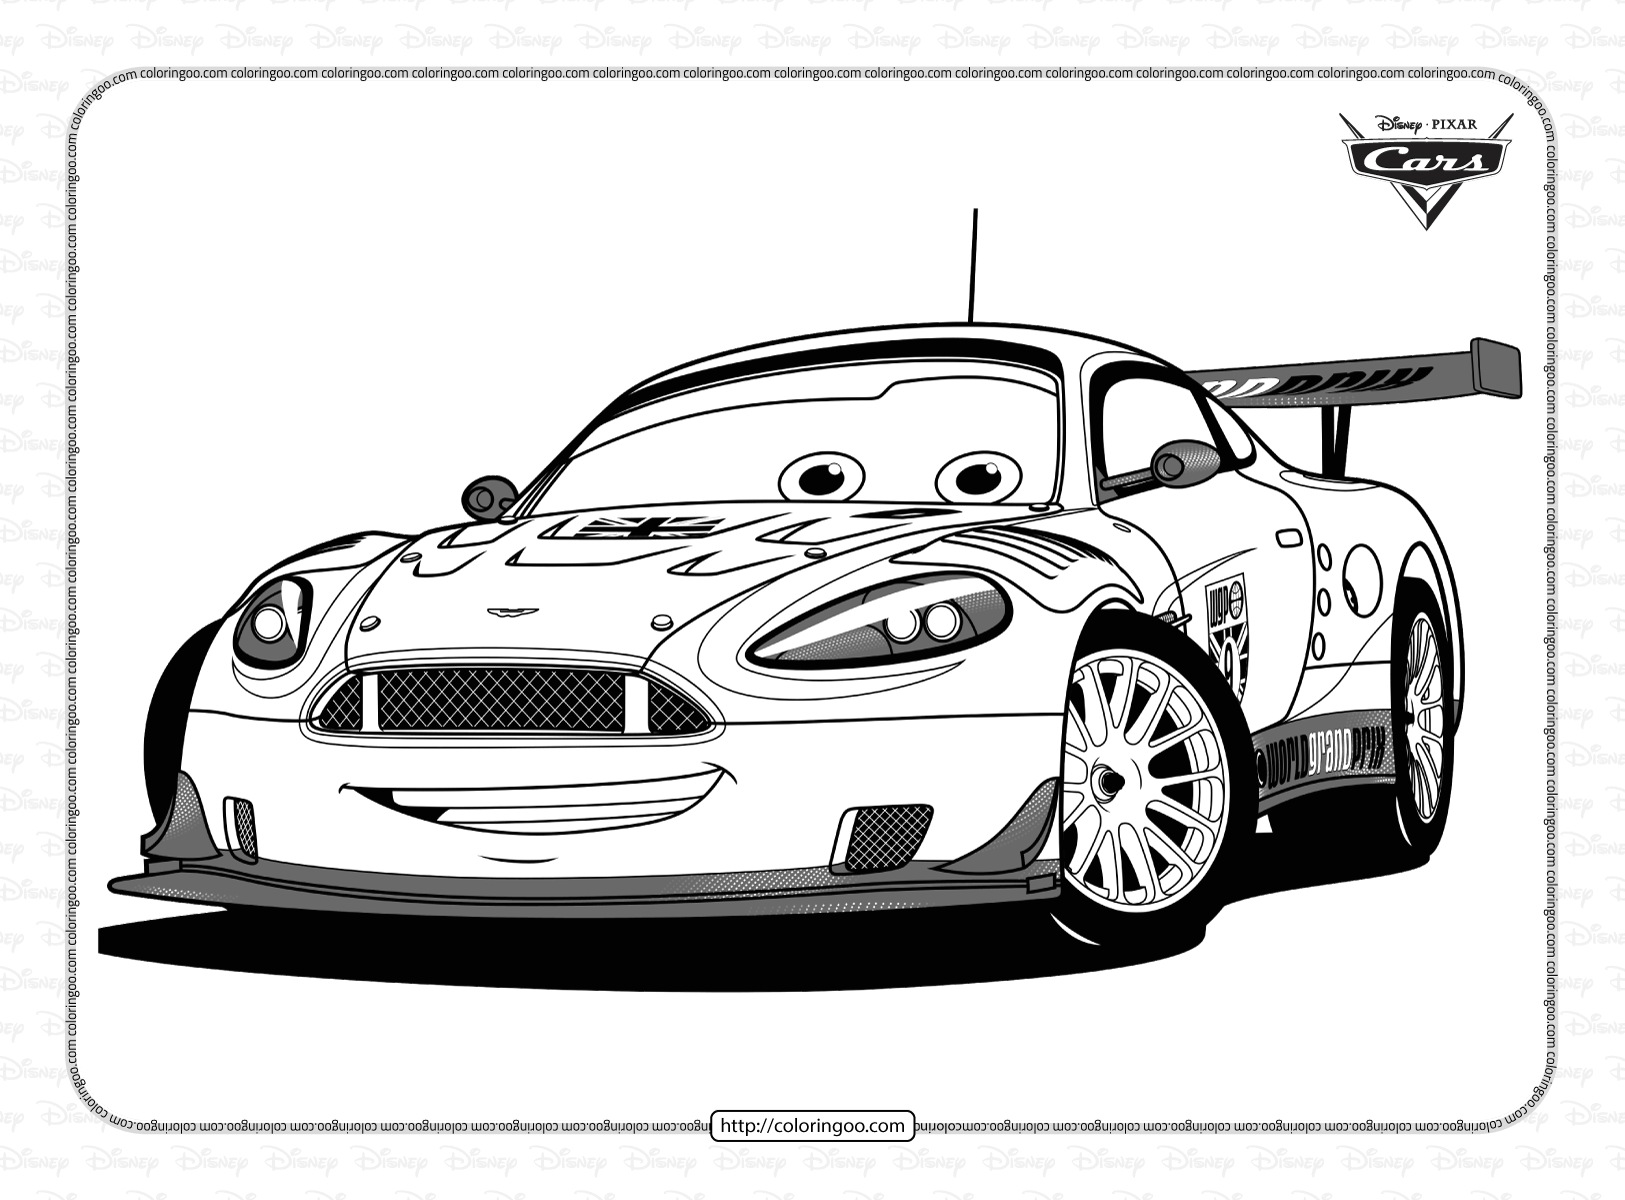 disney pixar cars nigel gearsley coloring pages